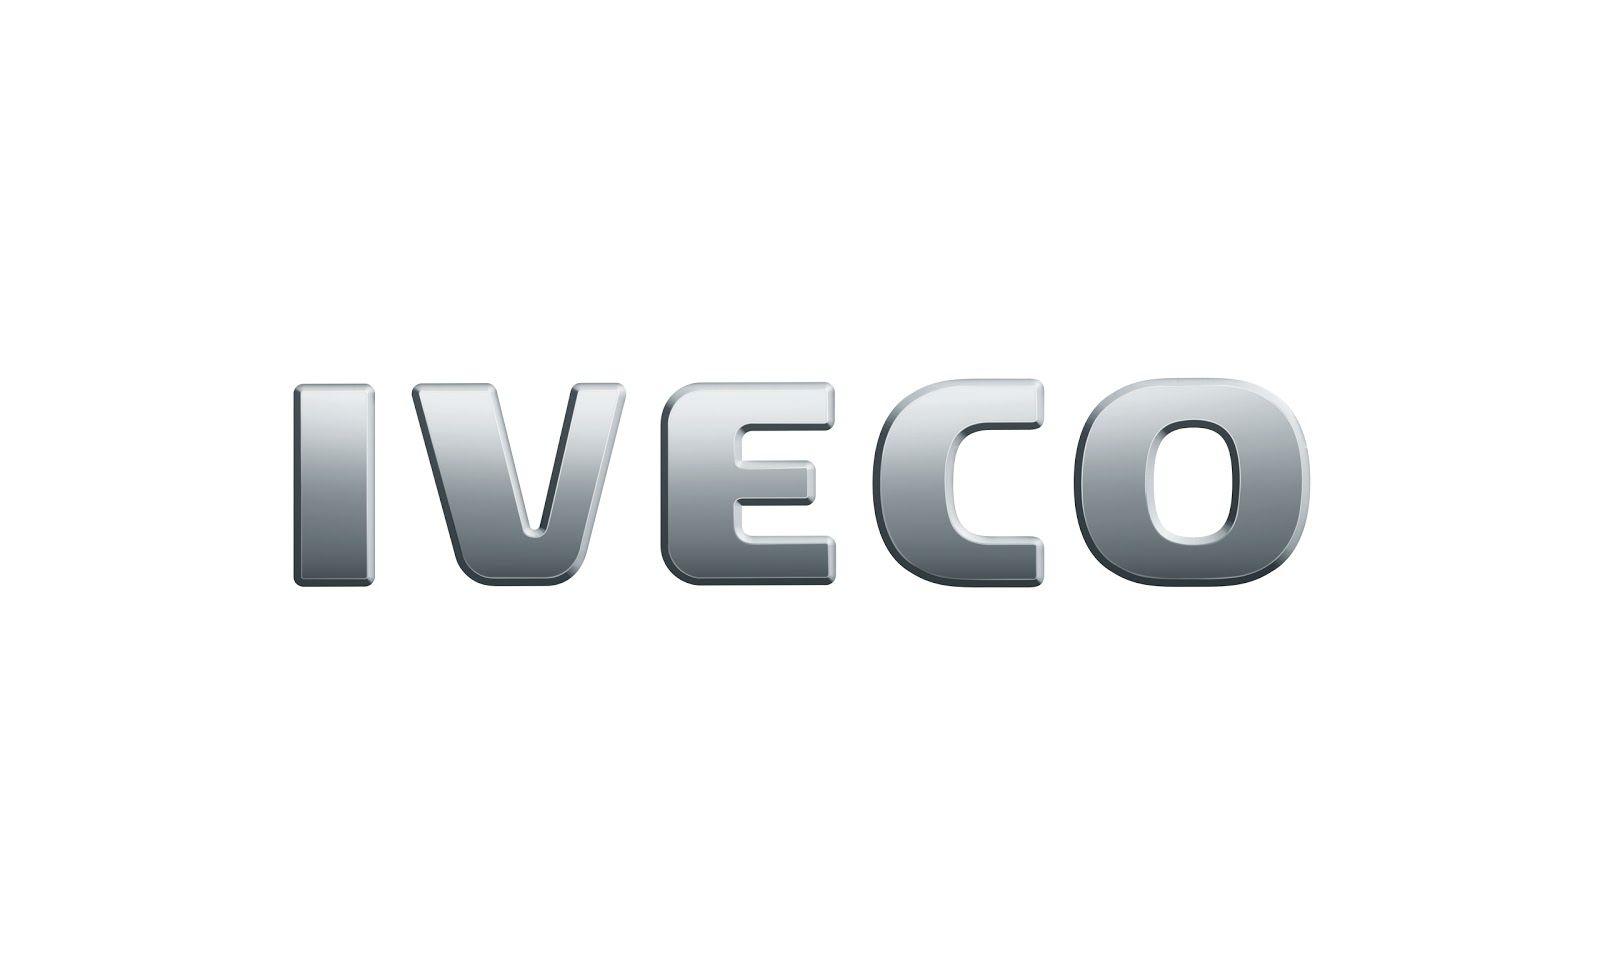 Iveco Car Logo - Auto Cars Logos: Iveco Logo